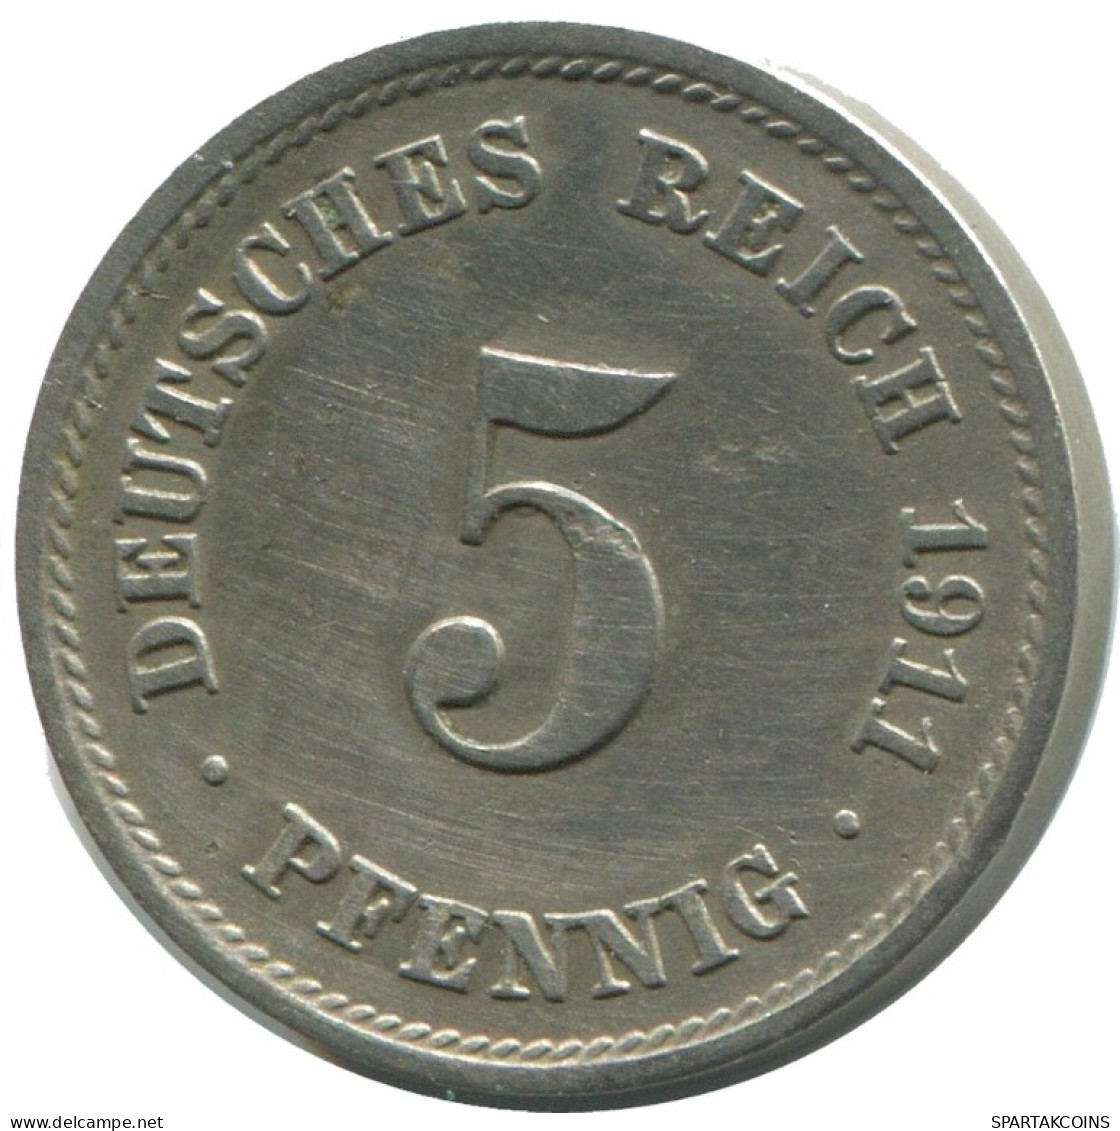 5 PFENNIG 1911 F ALEMANIA Moneda GERMANY #AD532.9.E.A - 5 Pfennig